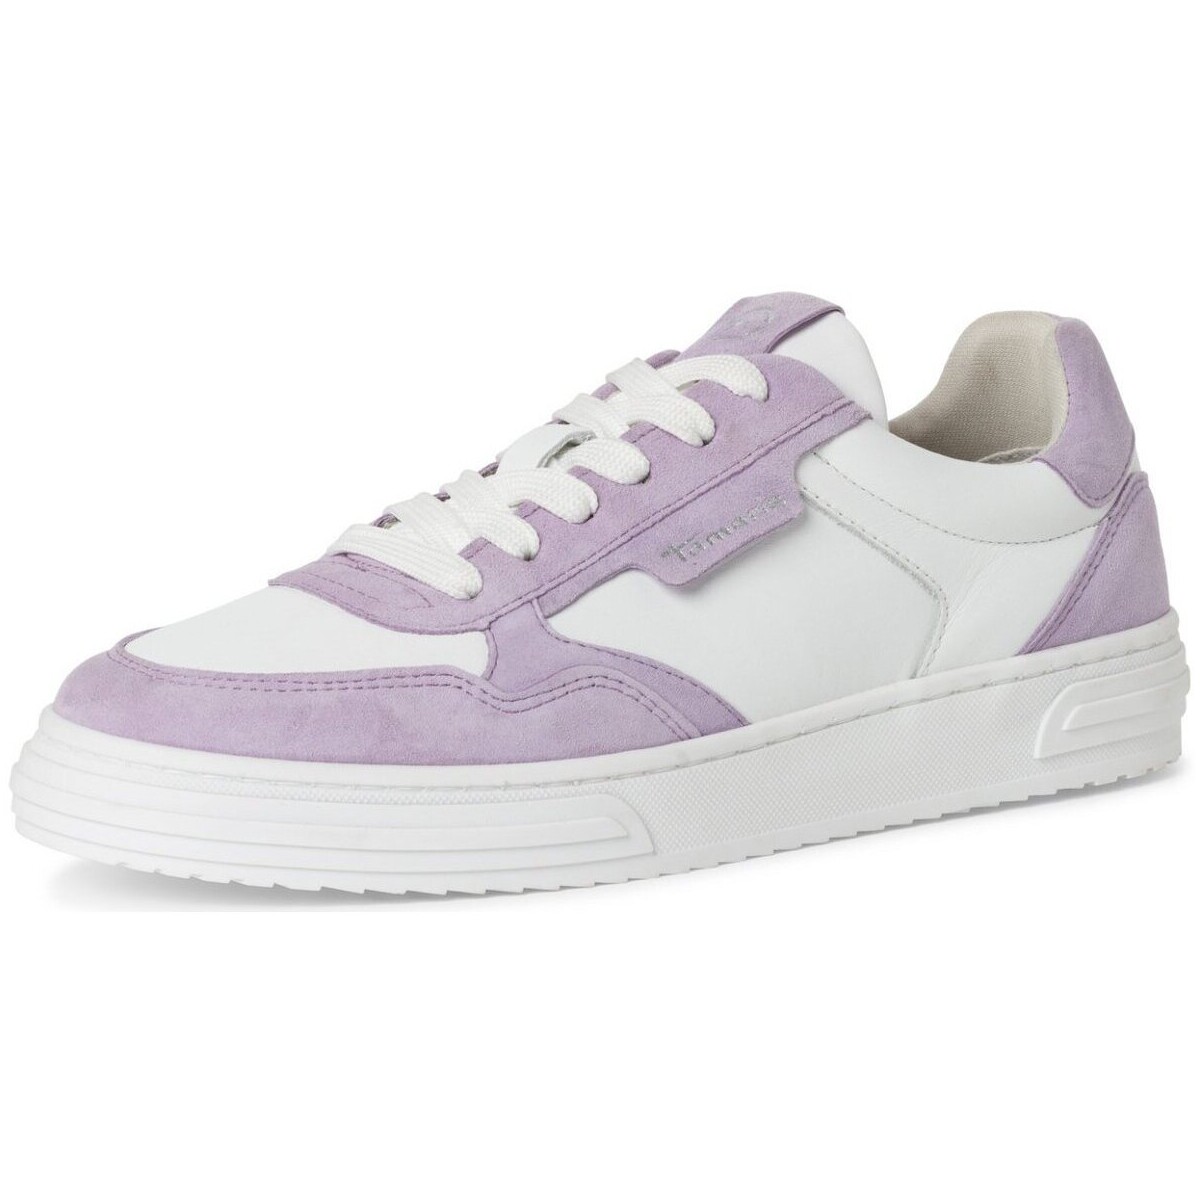 Schoenen Dames Sneakers Tamaris  Violet